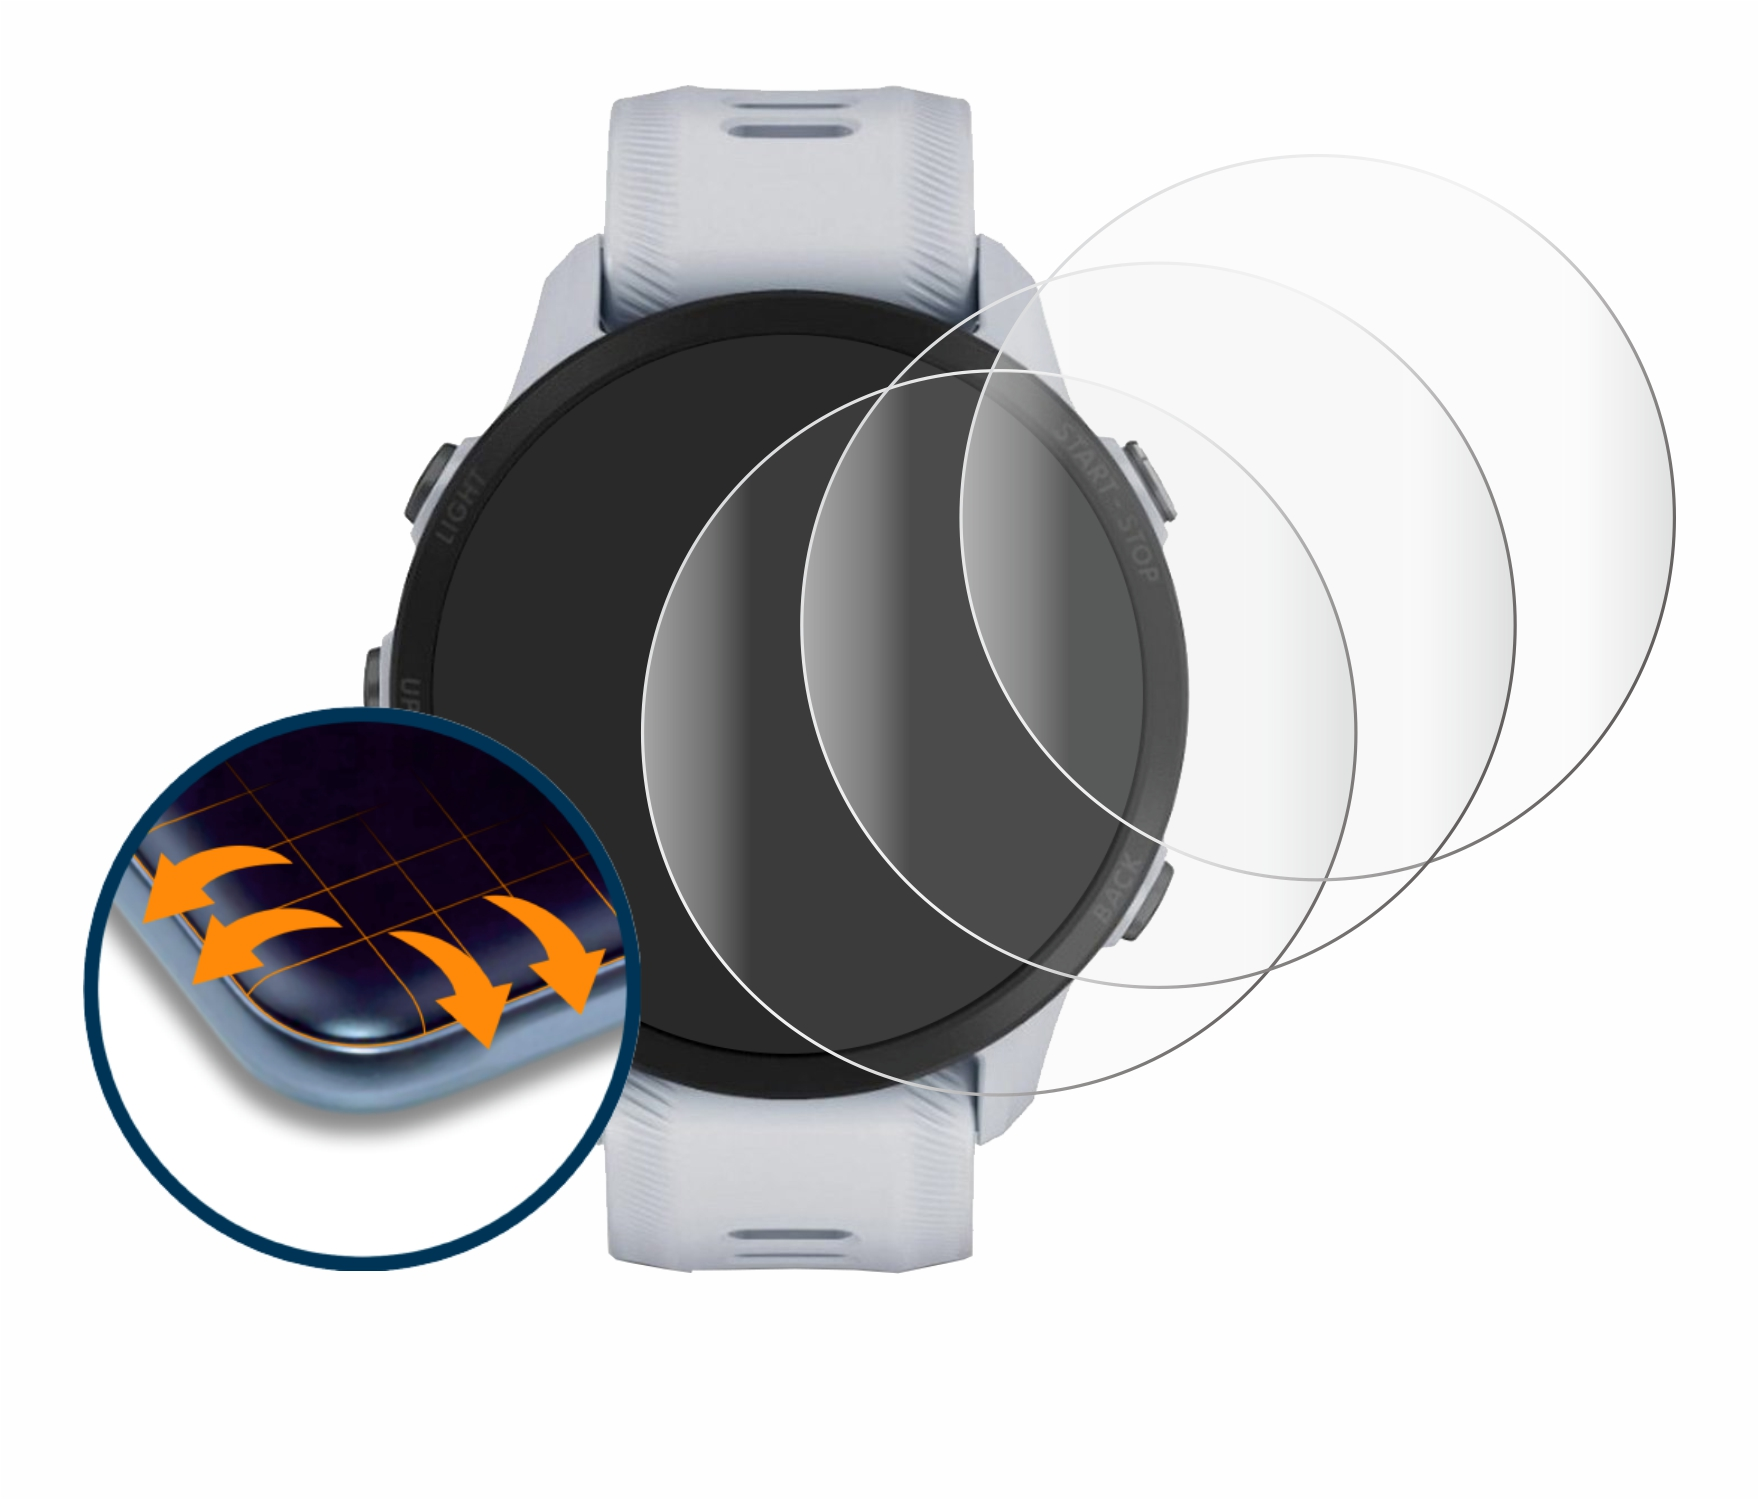 Garmin Flex 955) SAVVIES Curved Full-Cover 4x Forerunner 3D Schutzfolie(für